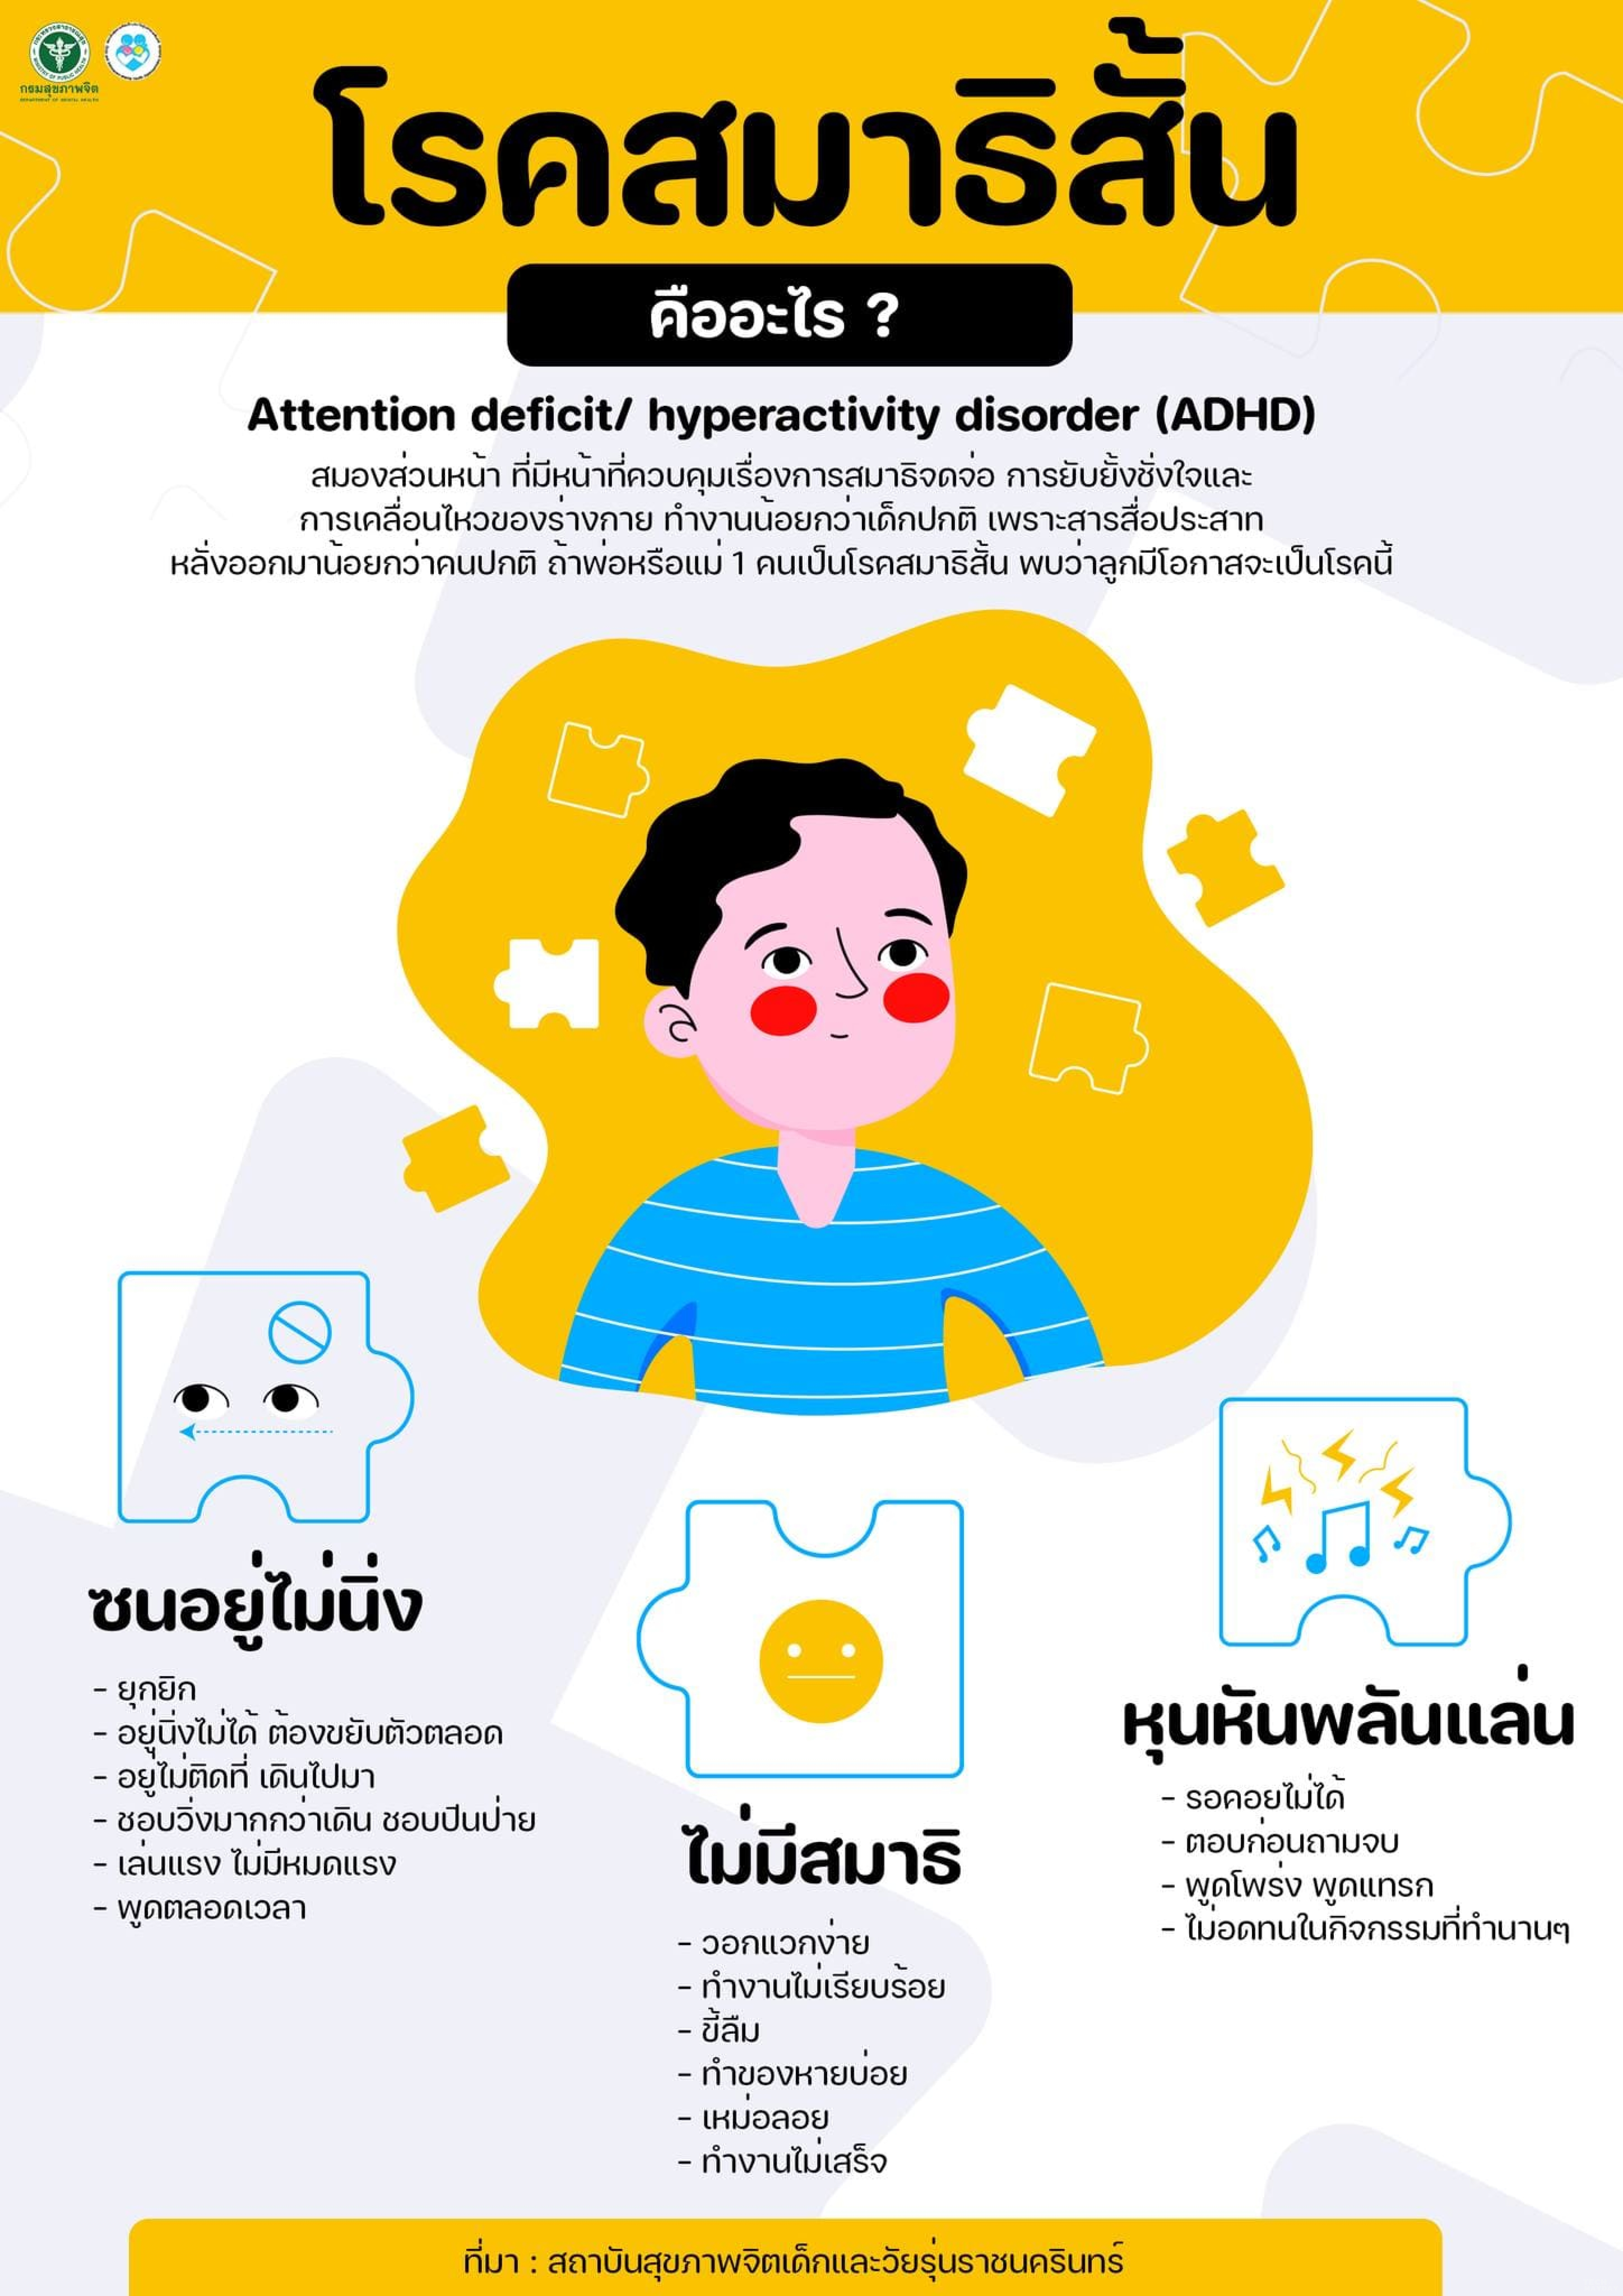 โรคสมาธิสั้น คืออะไร ? (ADHD ?)